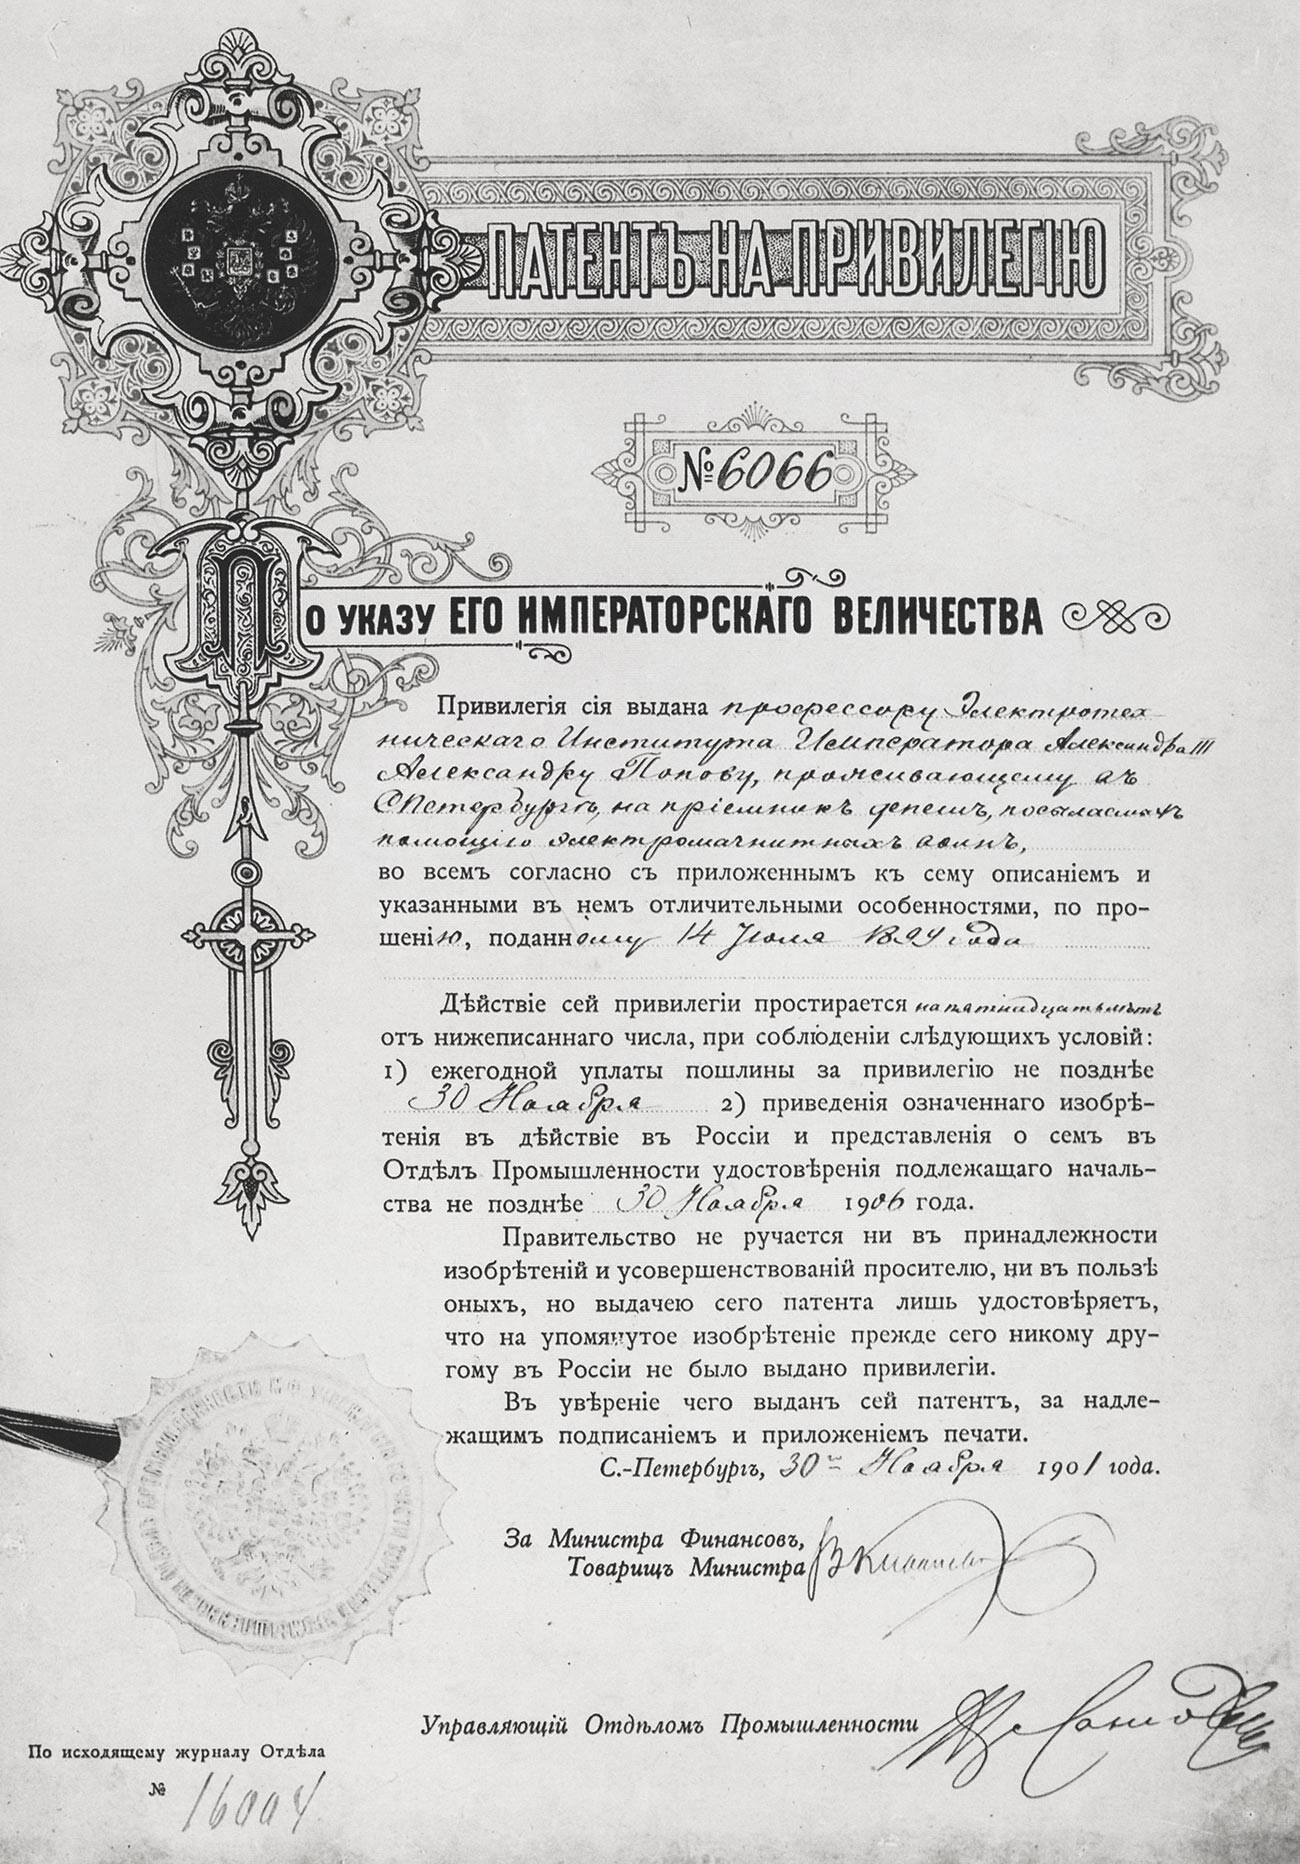 Privilegiertes Patent Nr. 6066 von A. S. Popow, 1901.